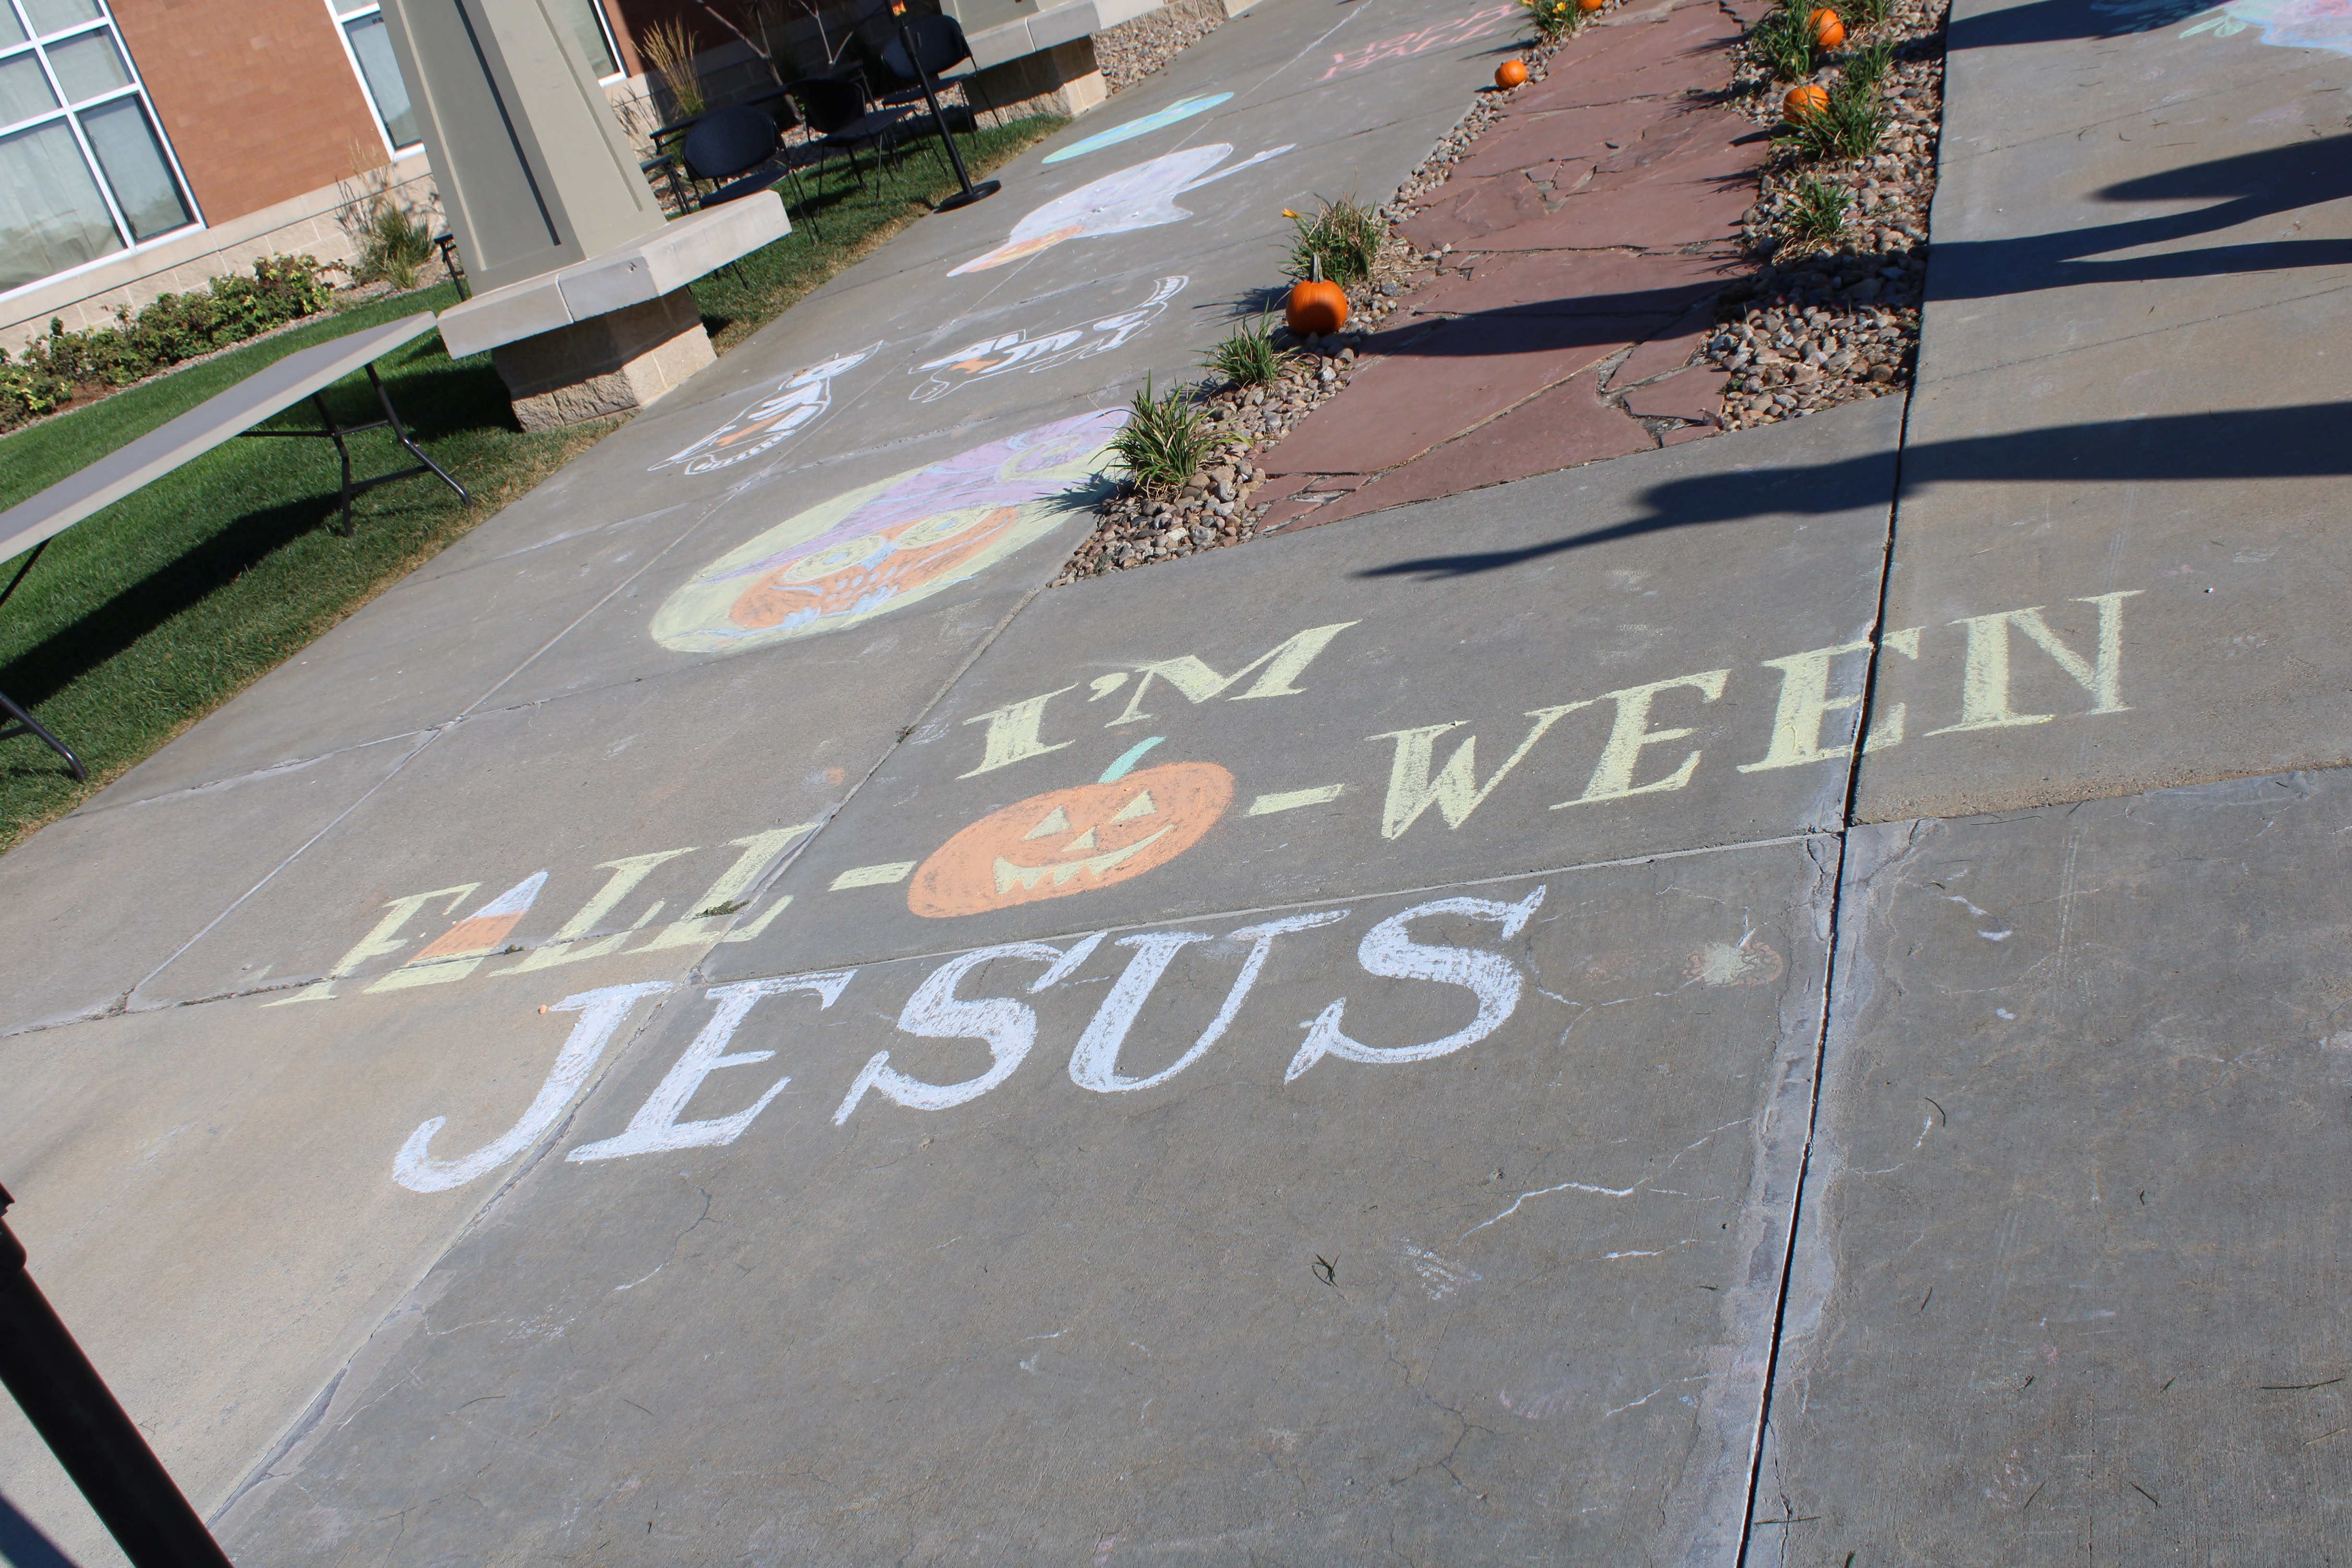 Horizons lincoln nebraska fall fest community church blanket support family fun chalk.JPG